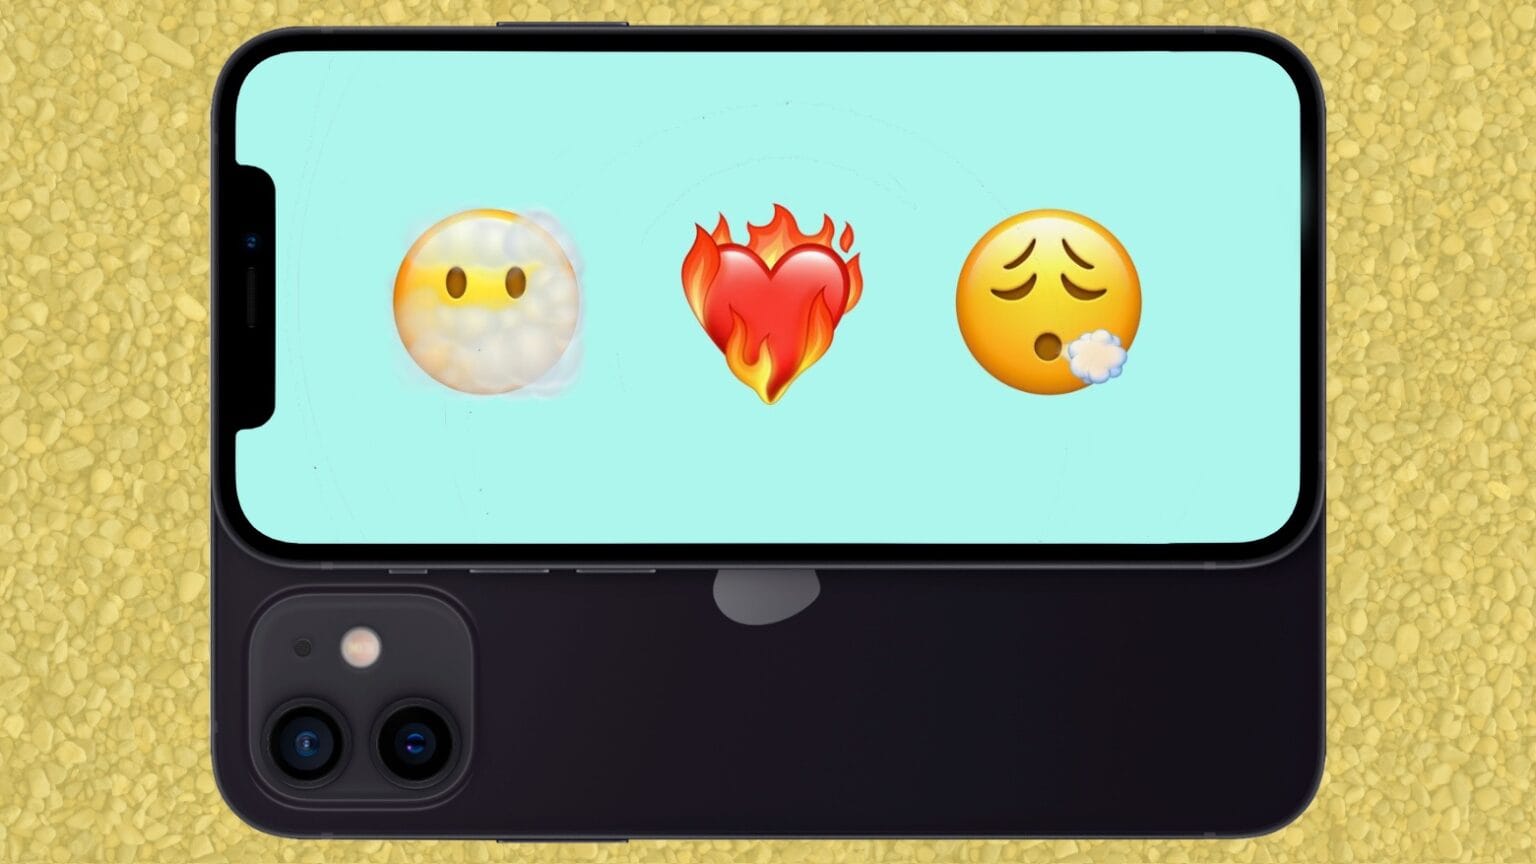 Look forward to some fun new emoji in iOS 14.5.